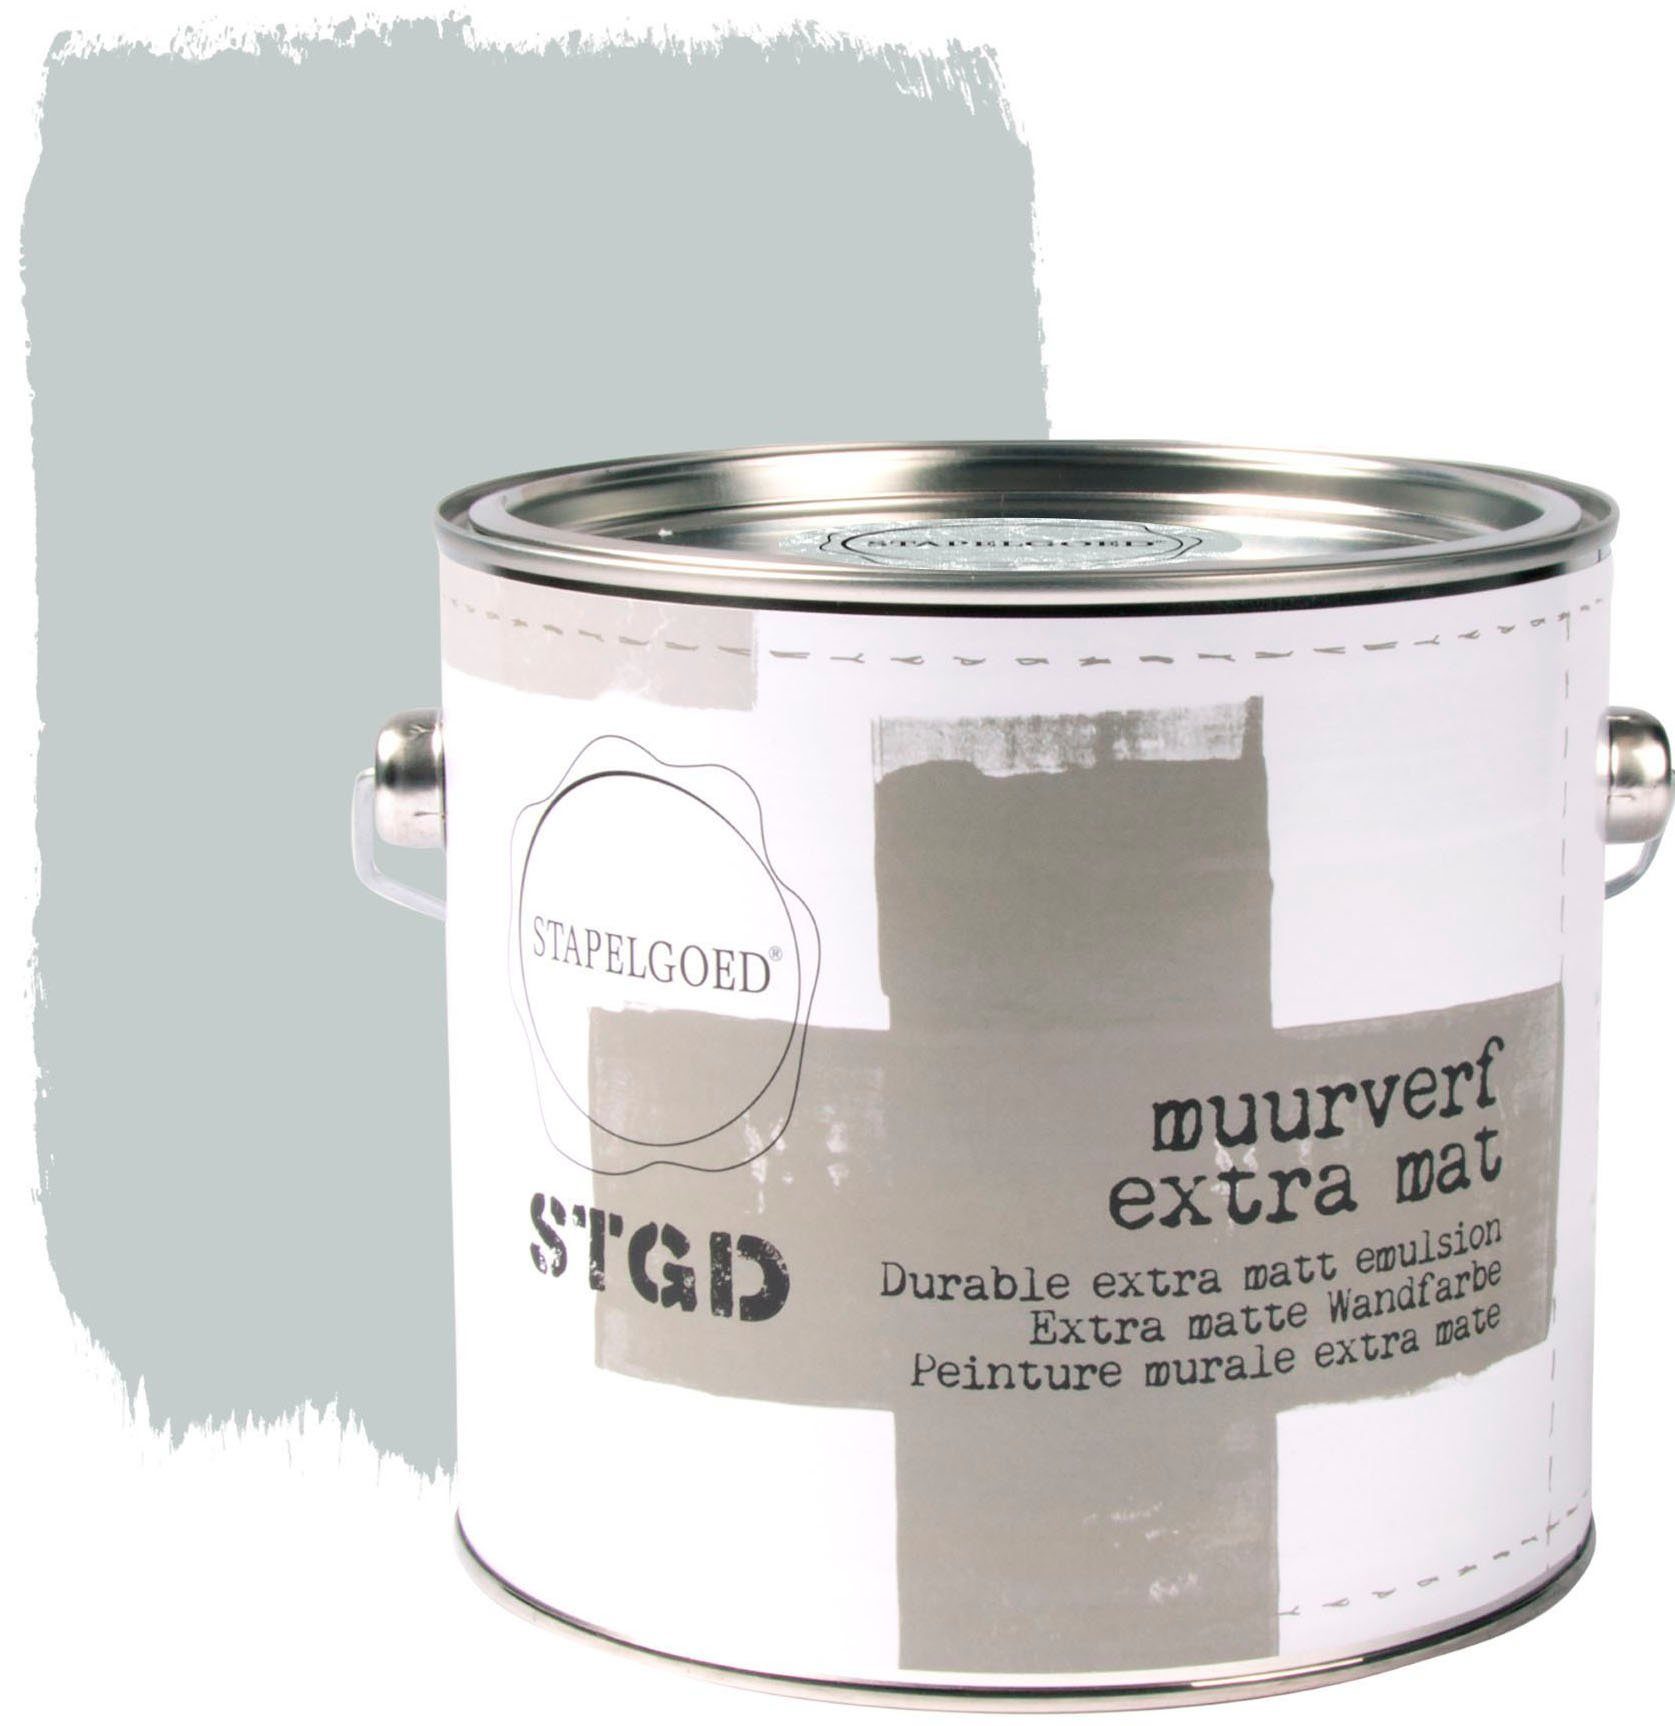 STAPELGOED Wandfarbe STGD muurverf grey shades, extra matt, hochdeckend und waschbeständig, 2,5 Liter Dolphin Grau